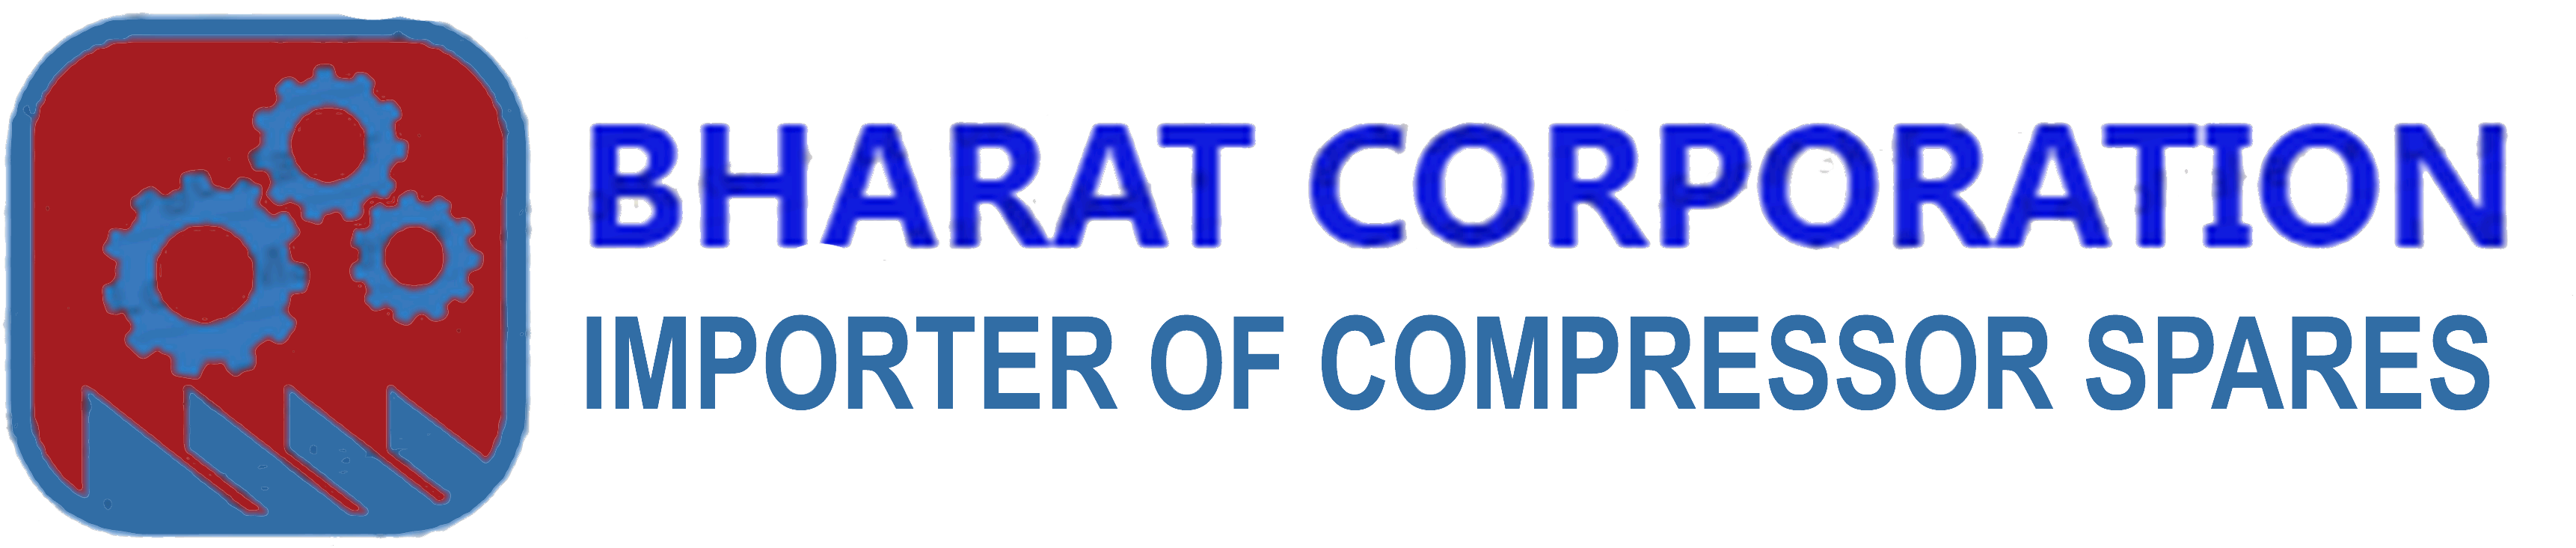 bharat corporation